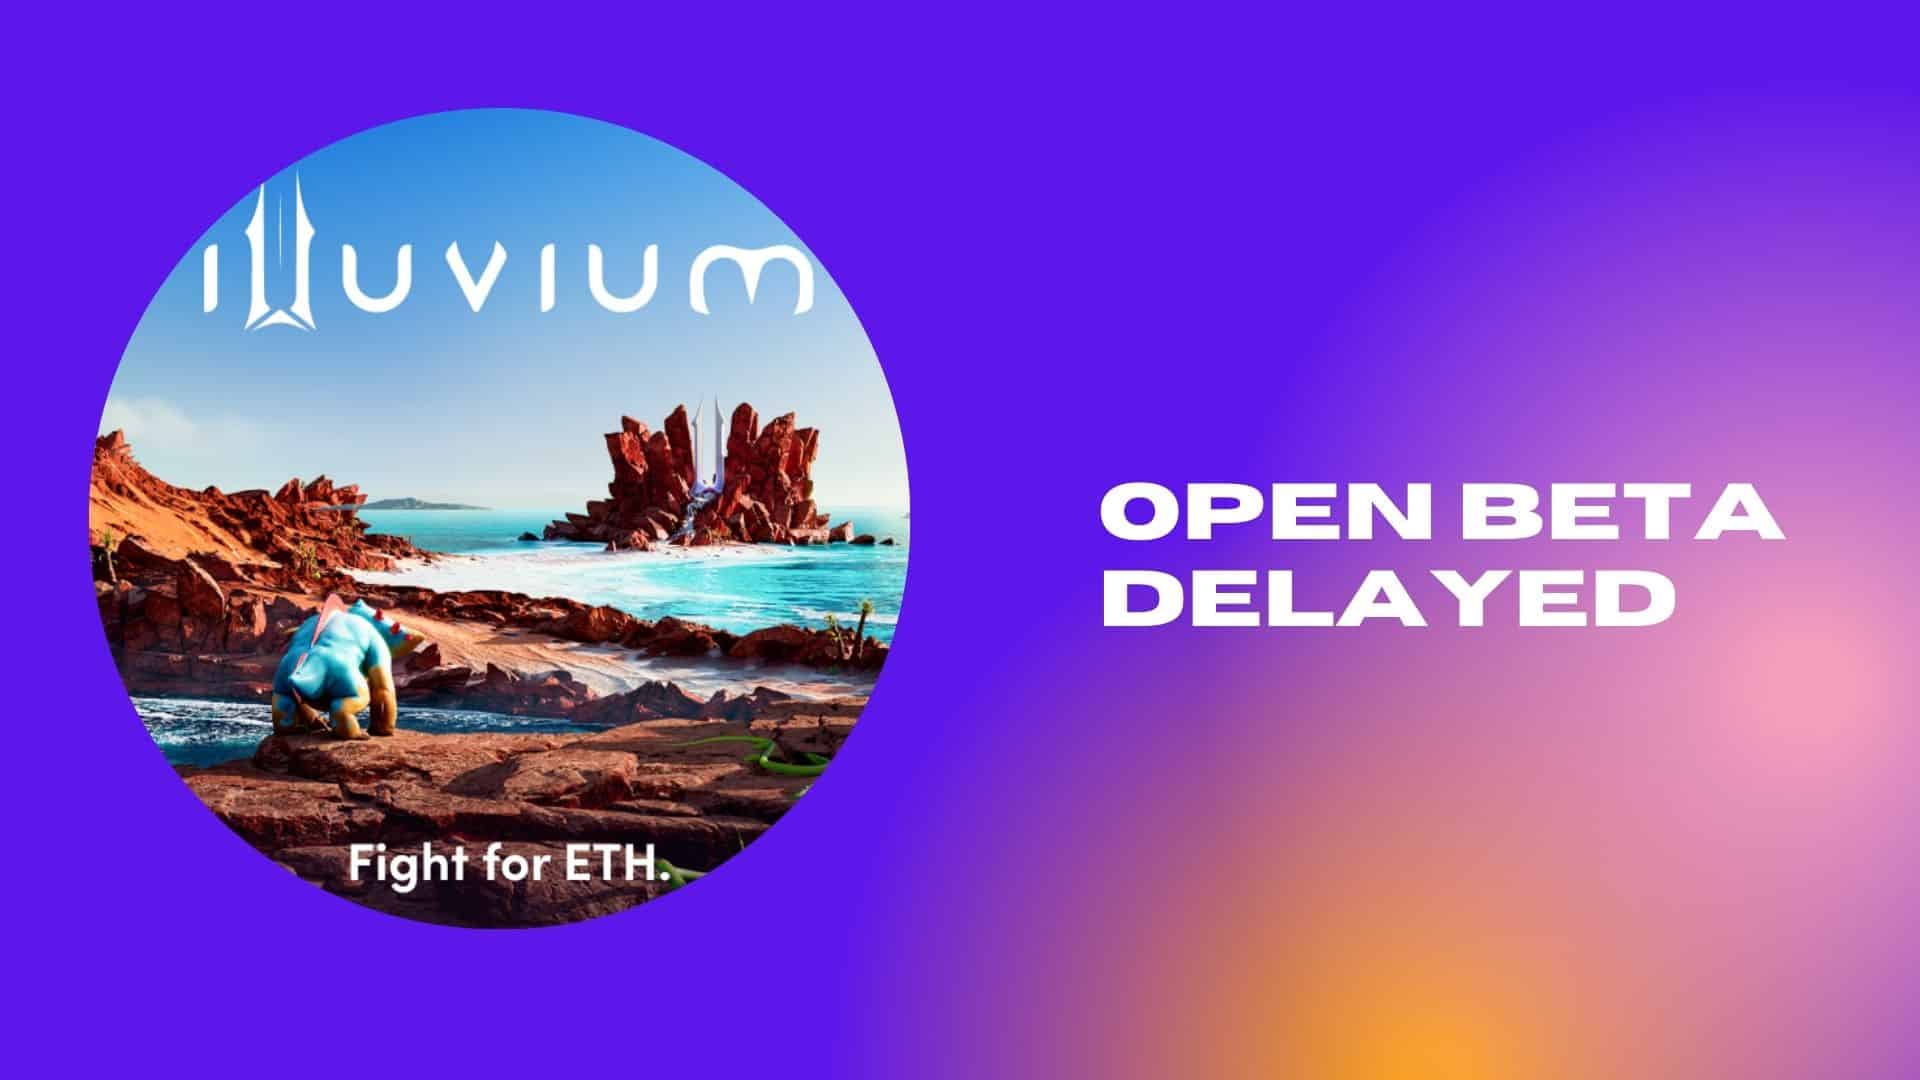 Illuvium open beta delayed